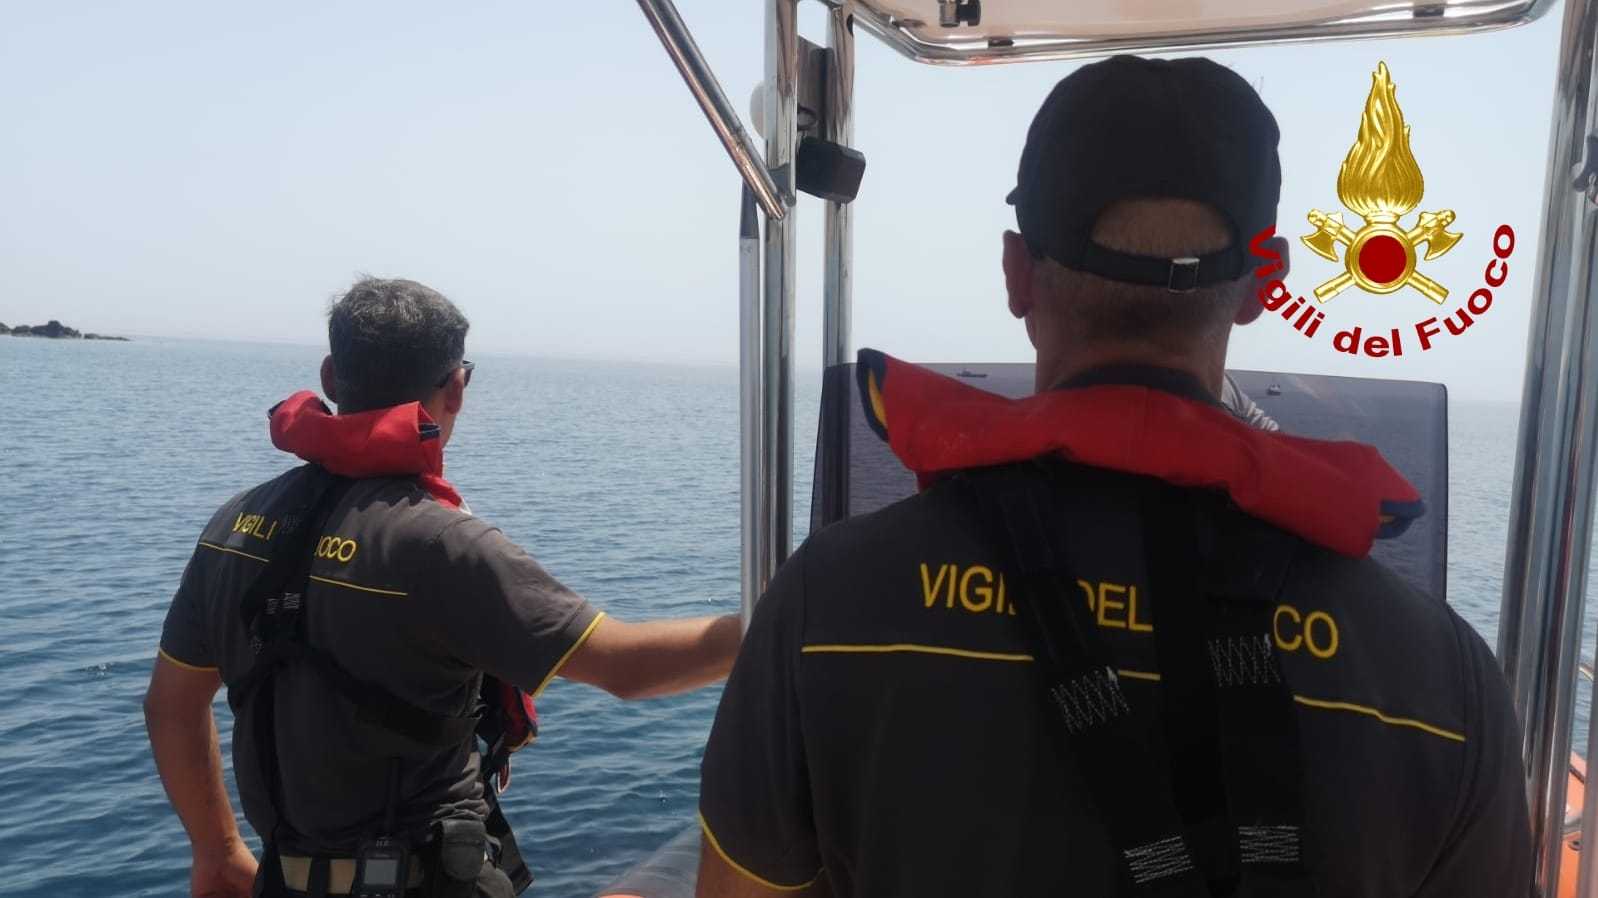 Sommozzatore dispersa in mare a Capocolonna, sul posto varie unità dei Vvf